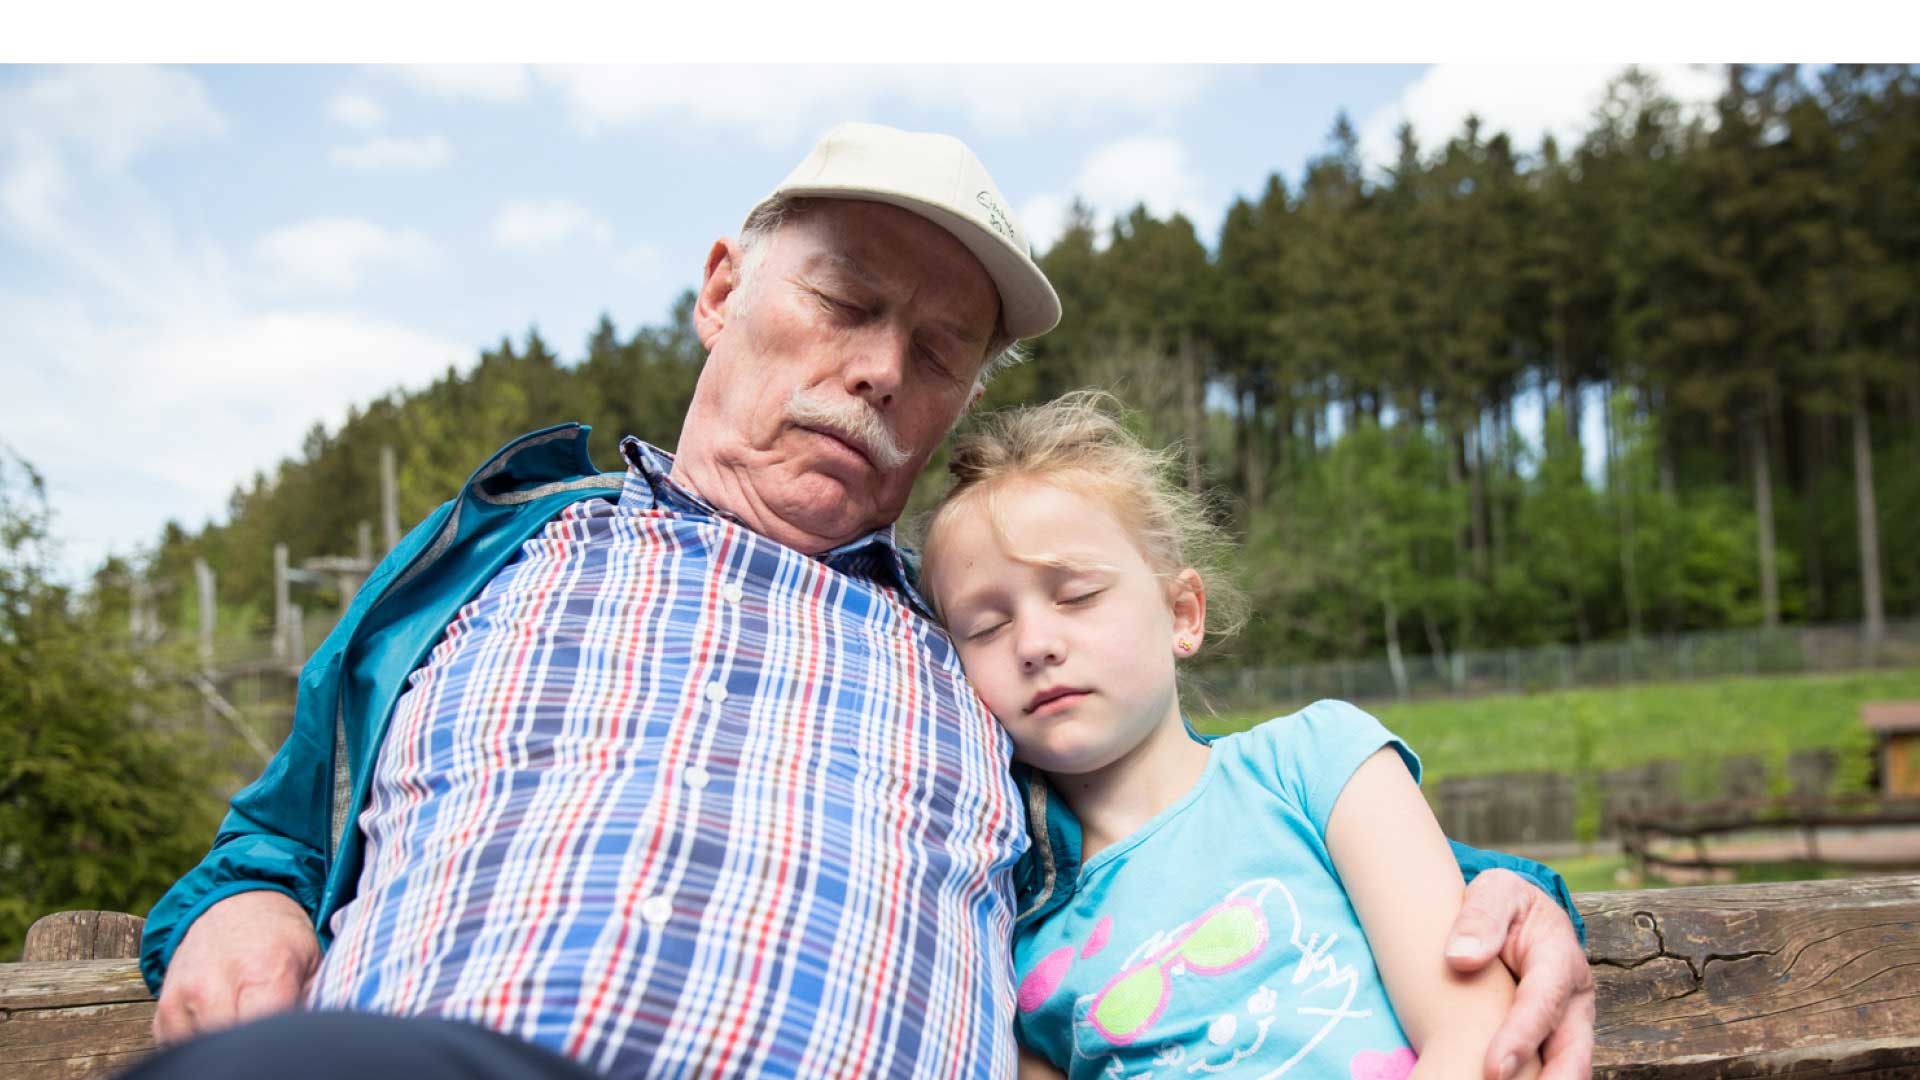 Der Opa macht mit seinem Enkelkind eine ruhige Pause auf der Parkbank im Freizeitpark.